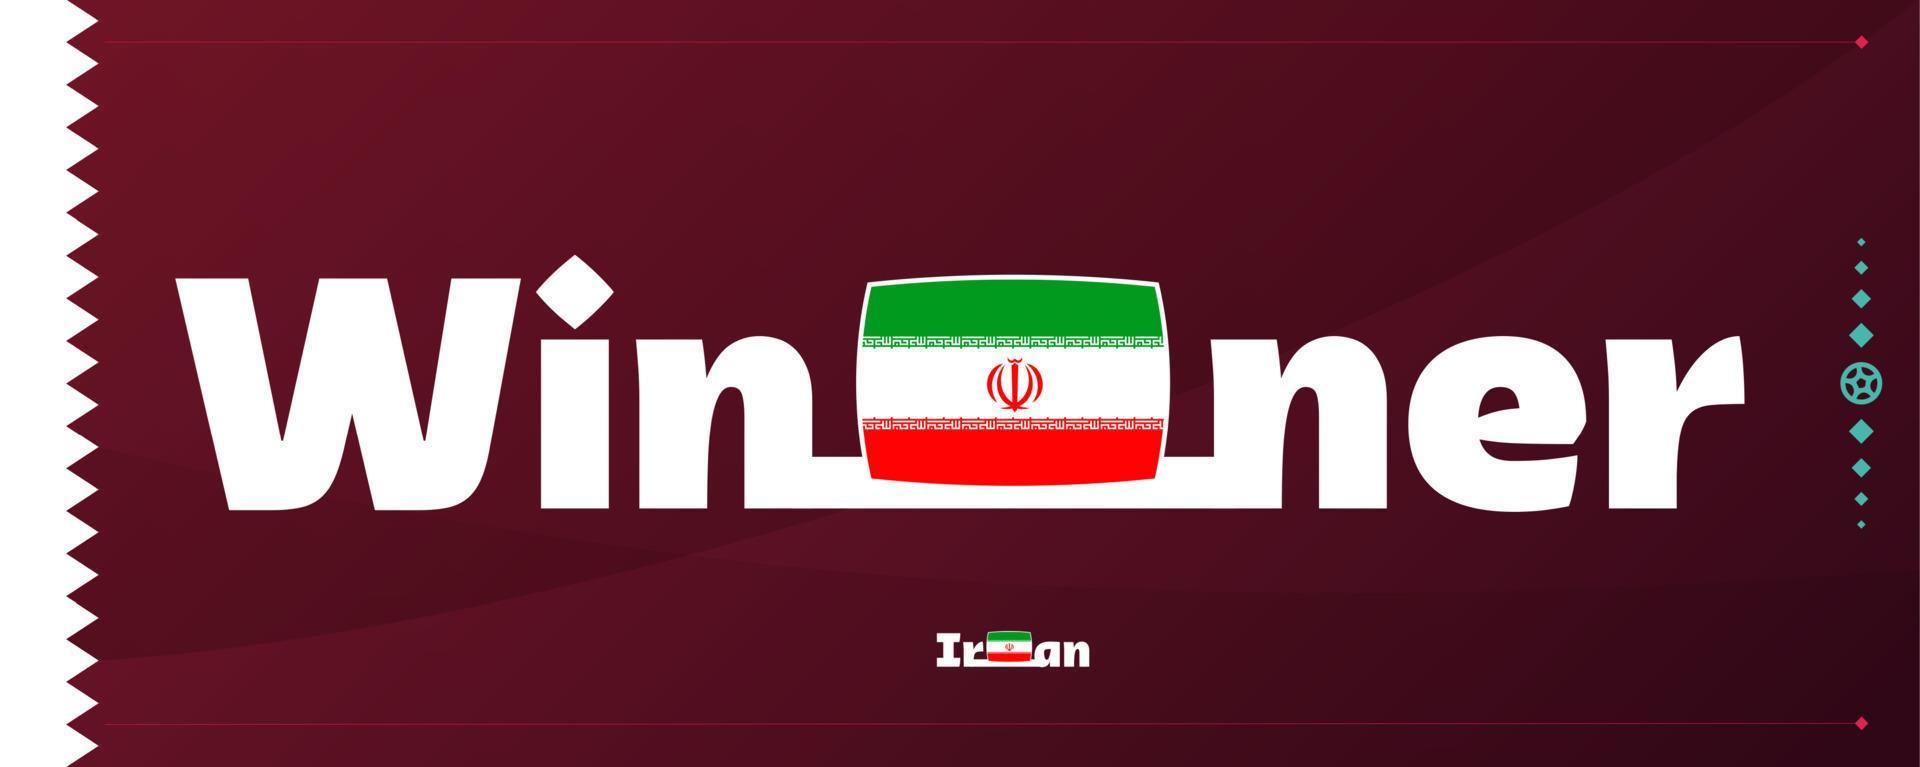 bandeira do irã com slogan vencedor no fundo do futebol. ilustração vetorial de torneio de futebol mundial 2022 vetor